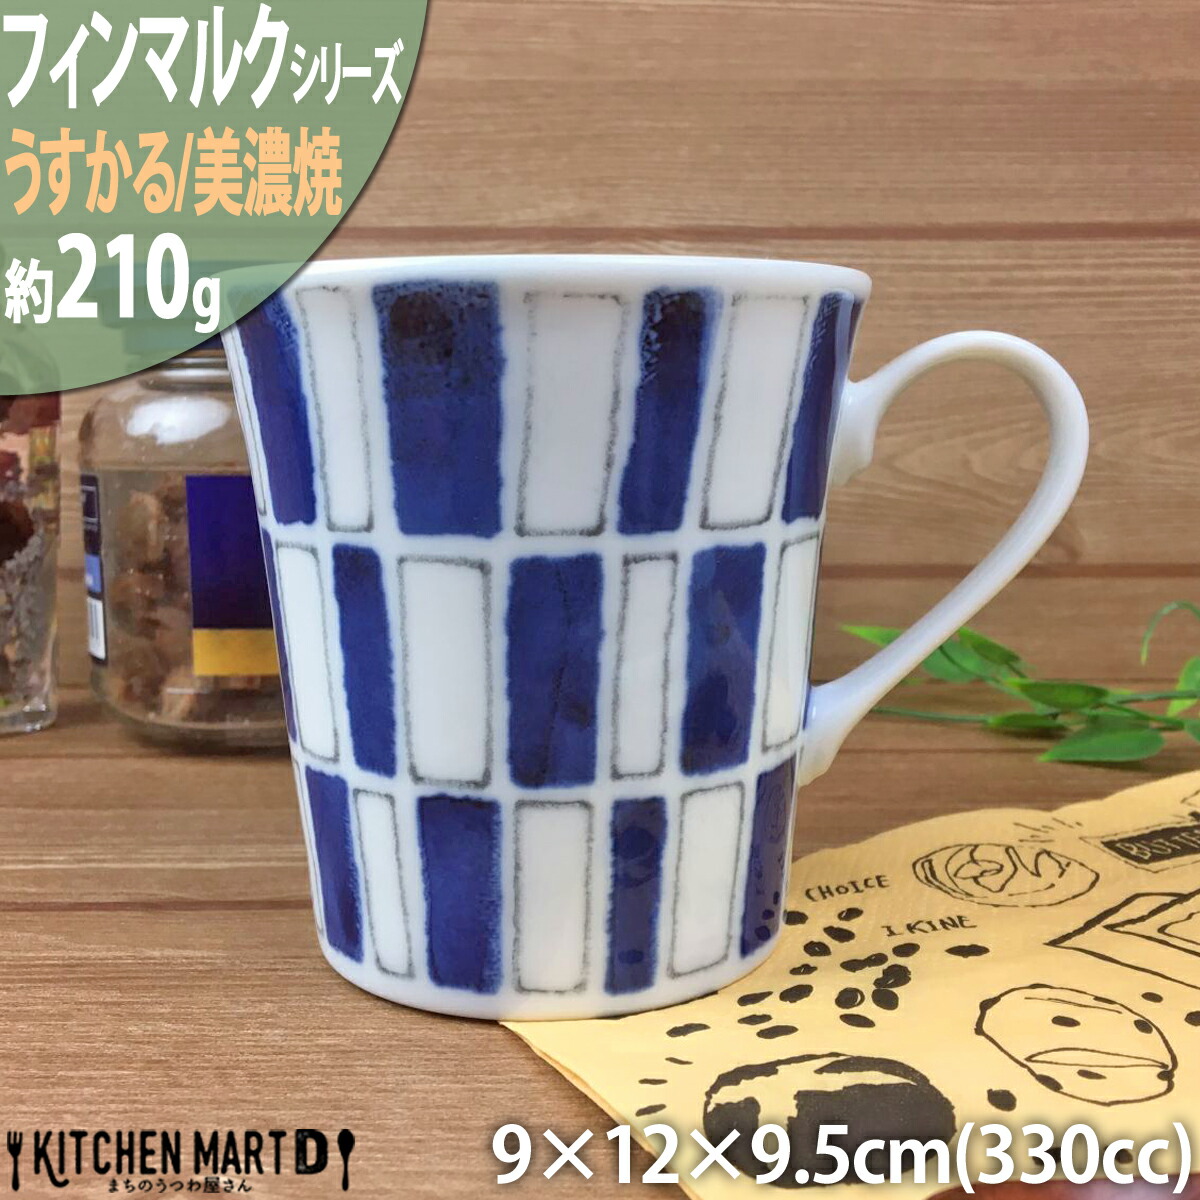 フィンマルク 青 うすかる マグ 約330cc 丸 丸型  おうちカフェ 美濃焼 国産 日本製 陶器 軽量 軽い おしゃれ カフェ 食器